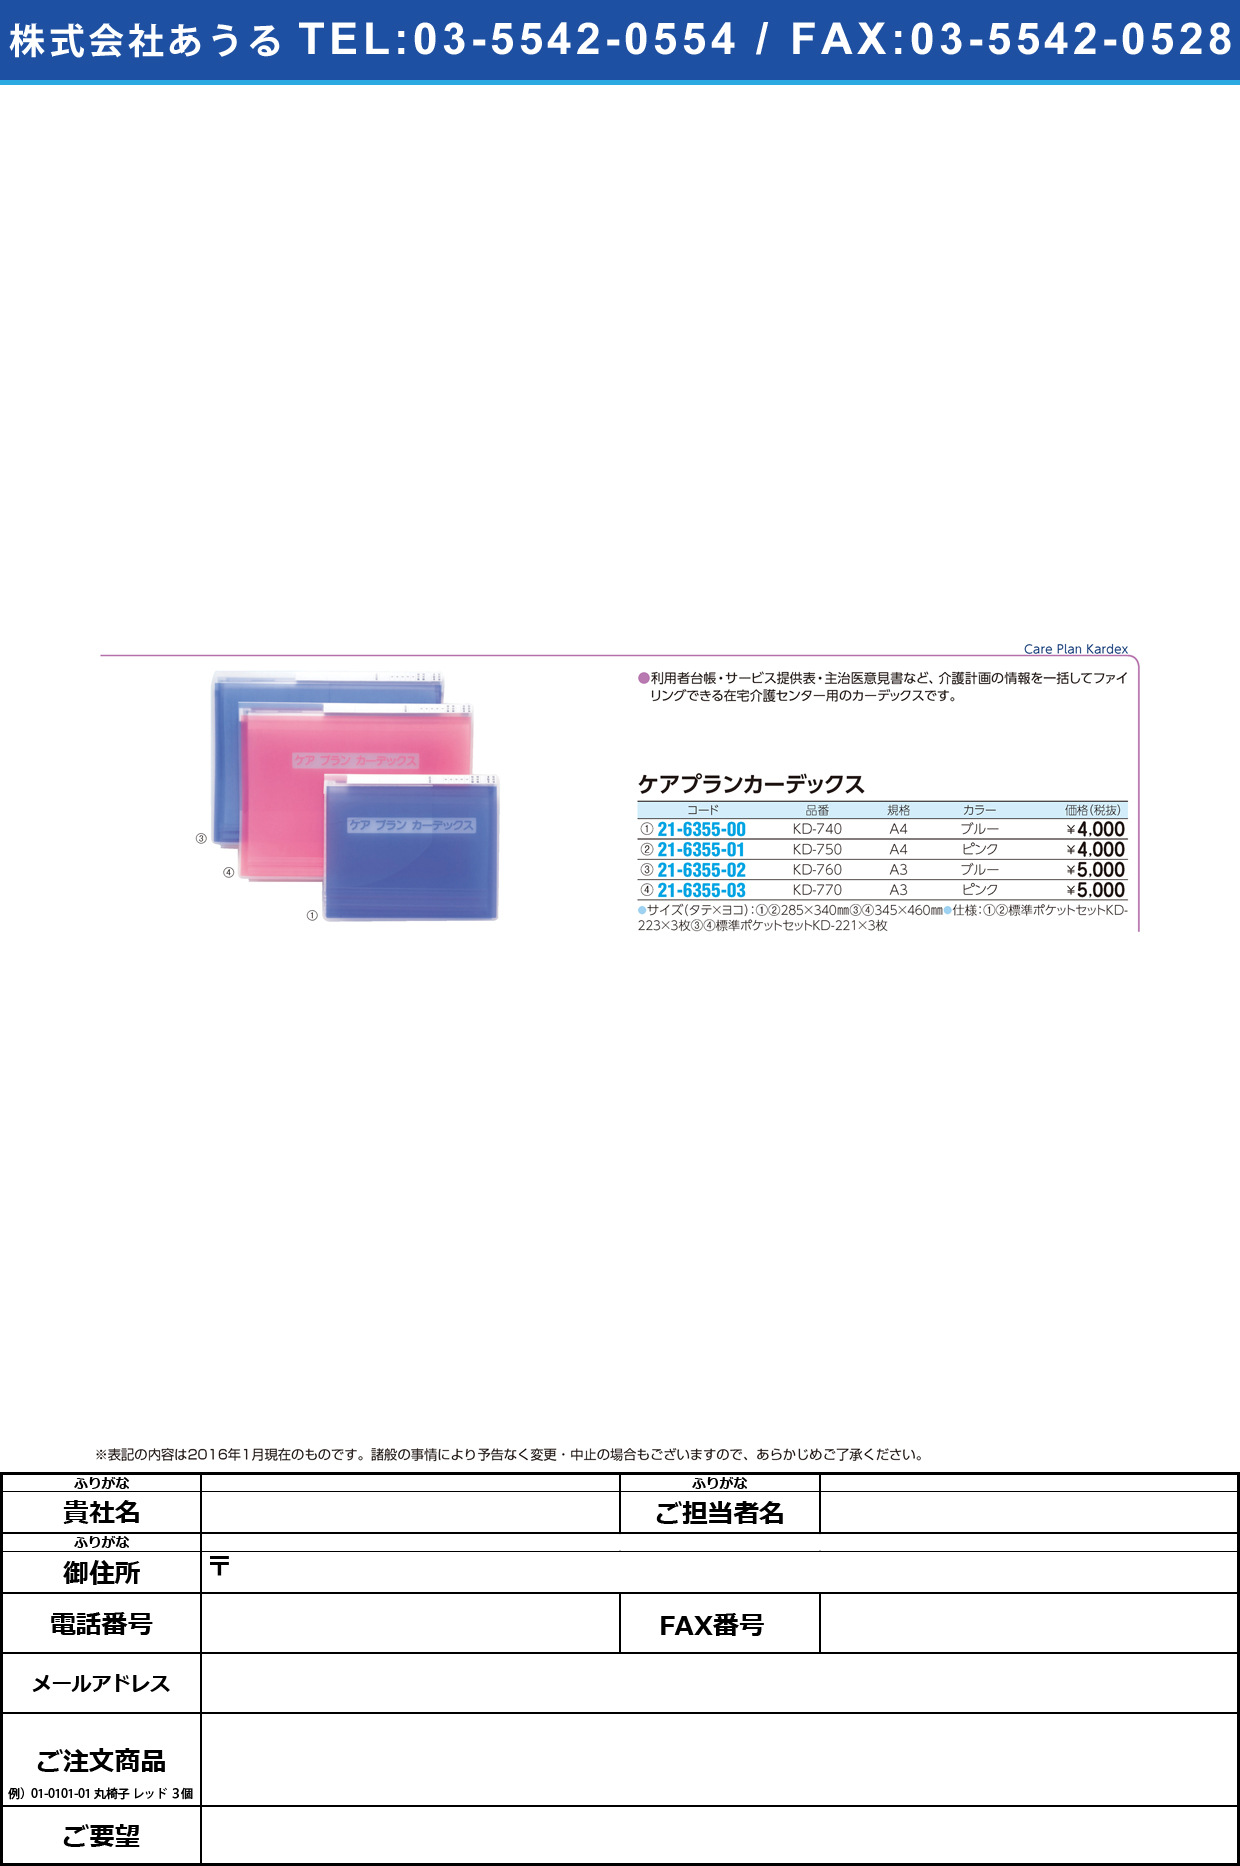 (21-6355-01)ケアプランカーデックス ｹｱﾌﾟﾗﾝｶｰﾃﾞｯｸｽ KD-750(A4)ﾋﾟﾝｸ【1冊単位】【2016年カタログ商品】